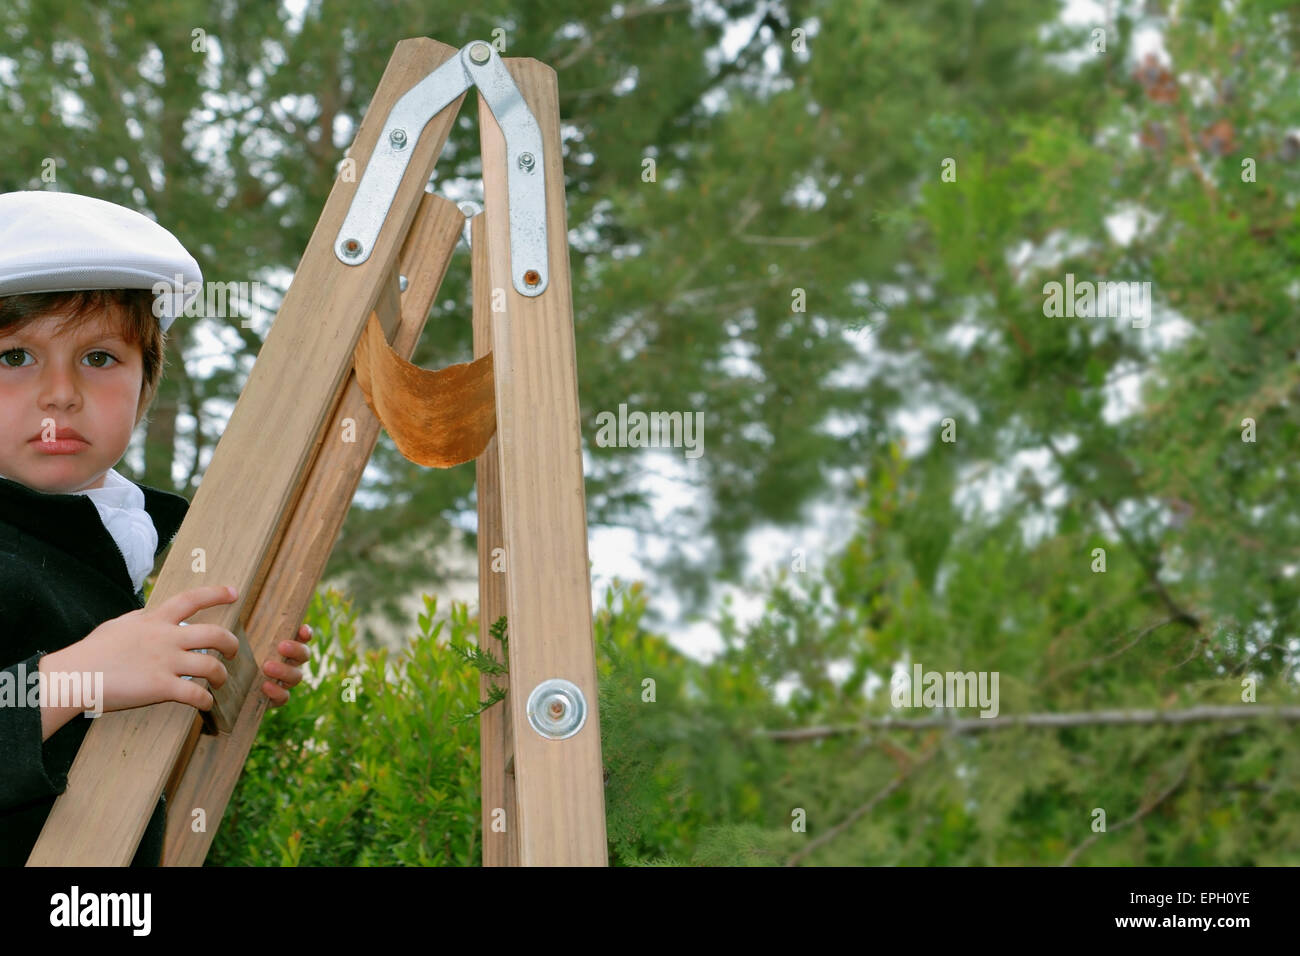 Der charmante junge kletterte auf eine Holzleiter Stockfoto